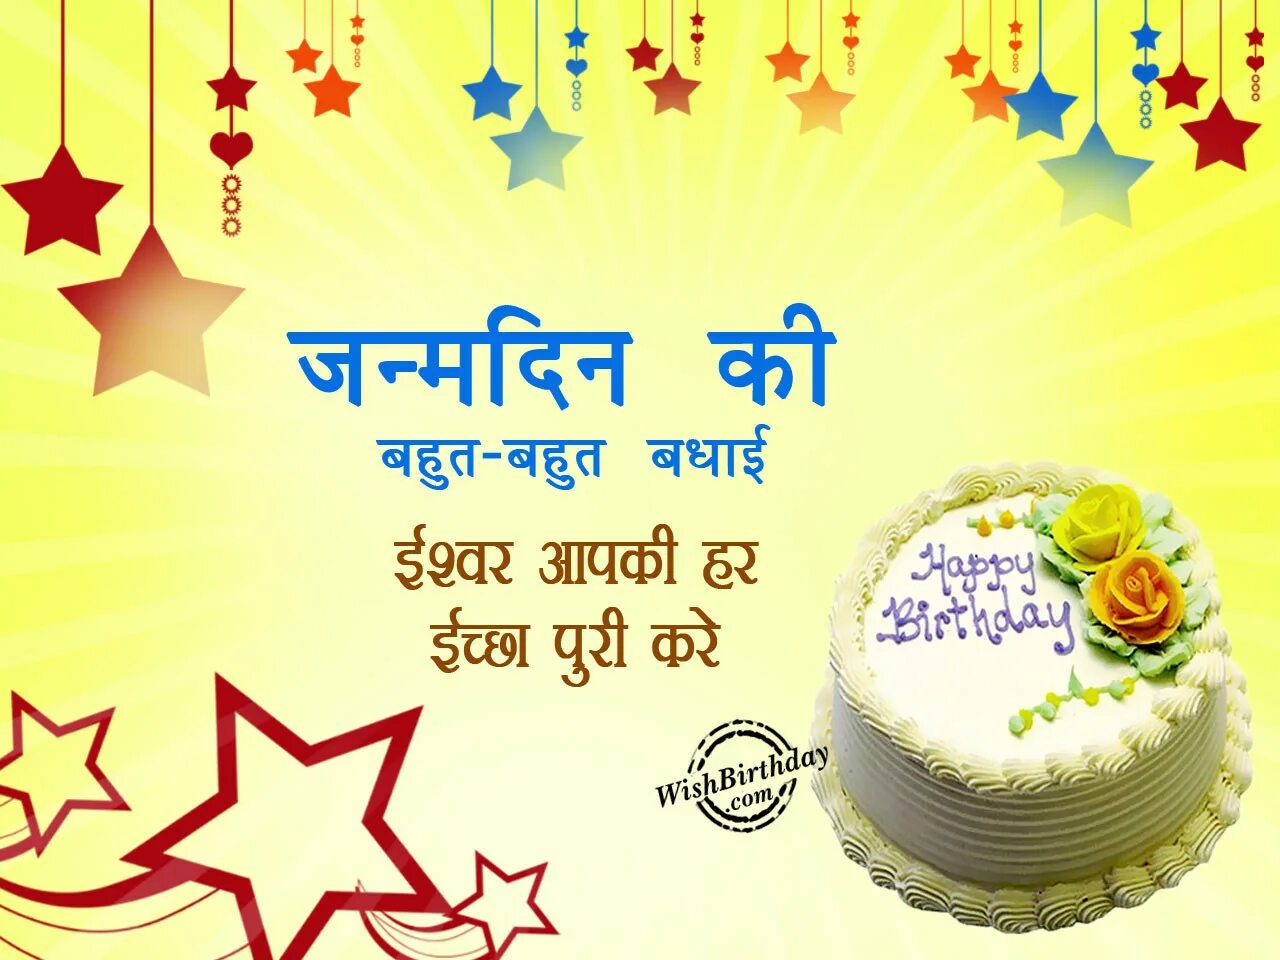 Звезды день рождения песни. С днем рождения на хинди открытки. Открытка с днём рождения на индийском языке. Поздравление с днем рождения на хинди. С днем рождения мужчине на хинди.